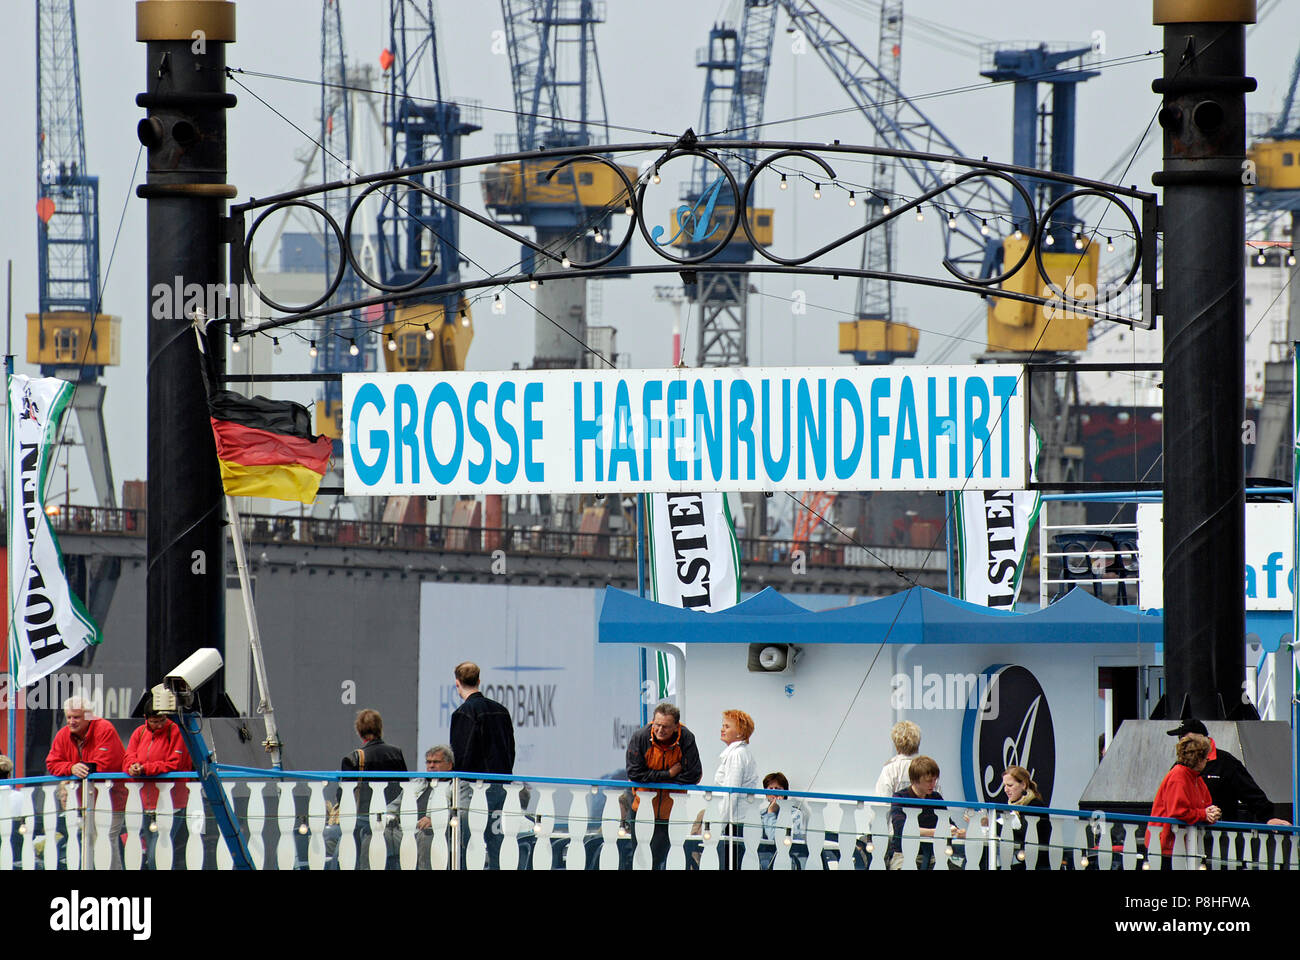 Grosse Hafenrundfahrt, Schild an einem Raddampfer der Reederei Abicht an den Landungsbruecken im Hamburger Hafen. Stock Photo